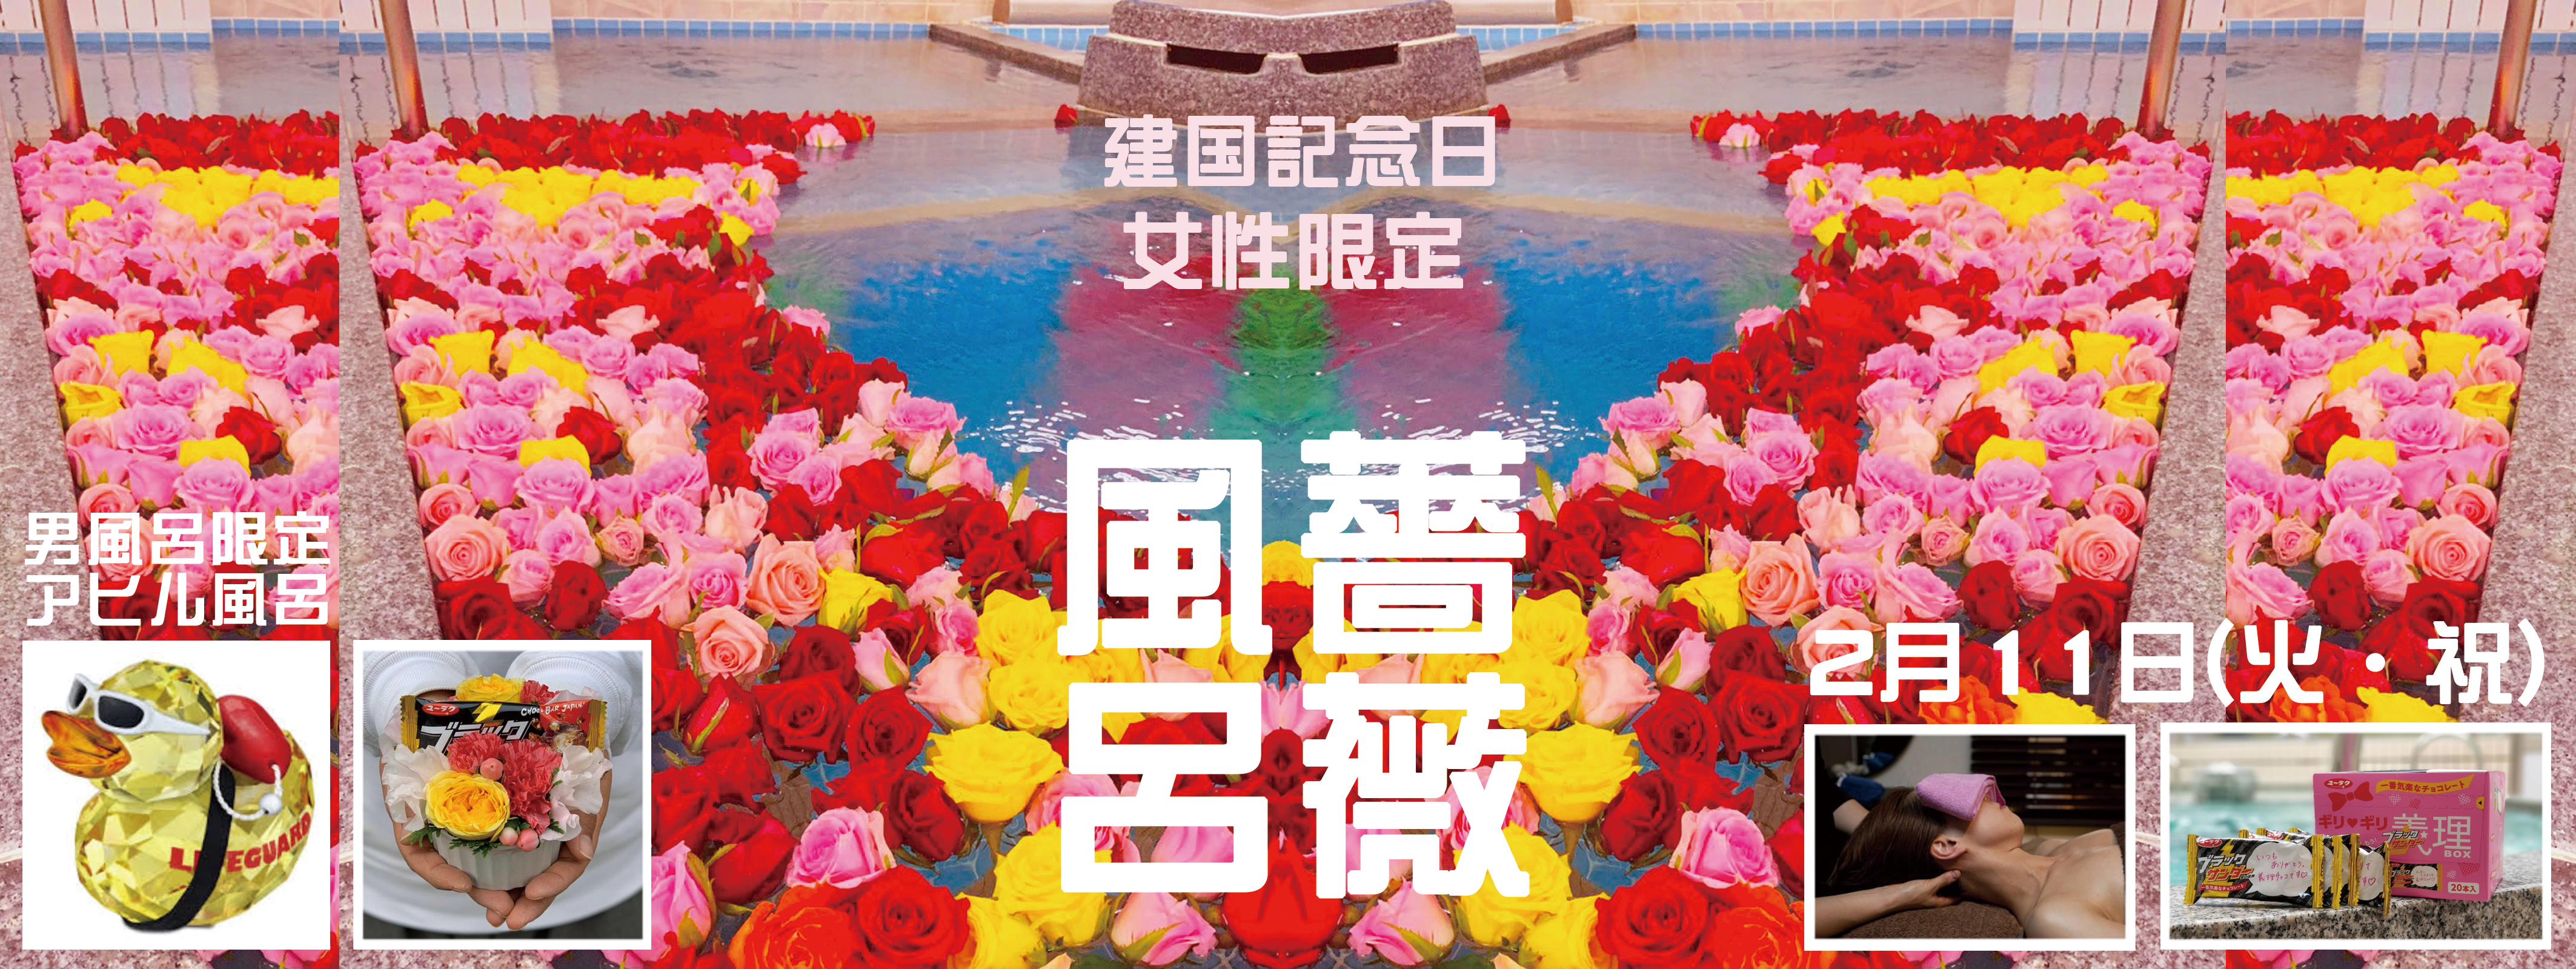 建国記念日『バラ風呂』イベント